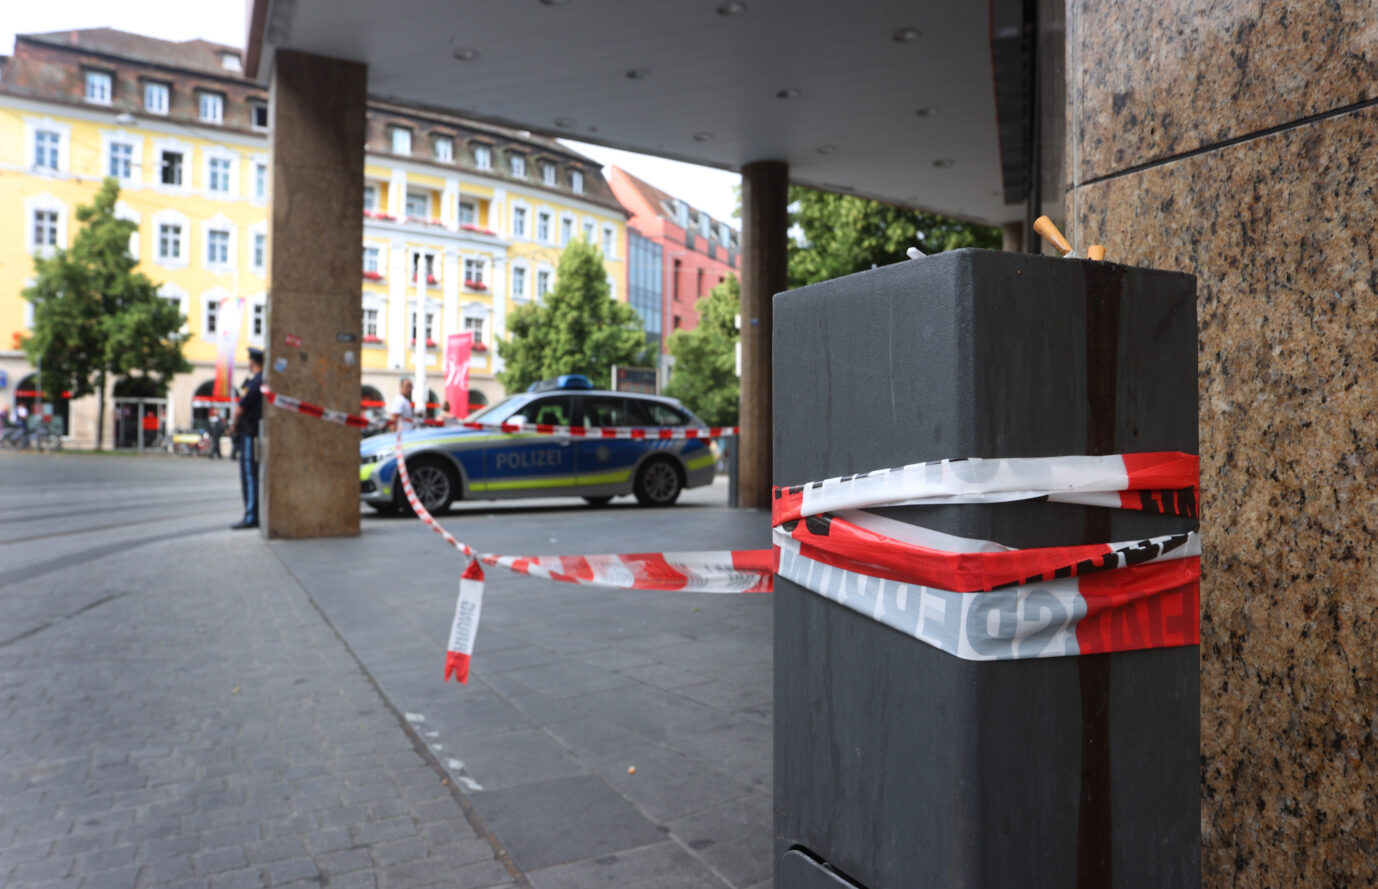 Tatort Würzburg: Der Messerangreifer, der im Juni drei Frauen tötete, ist älter als zunächst angenommen (Symbolbild) Foto: picture alliance/dpa | Karl-Josef Hildenbrand